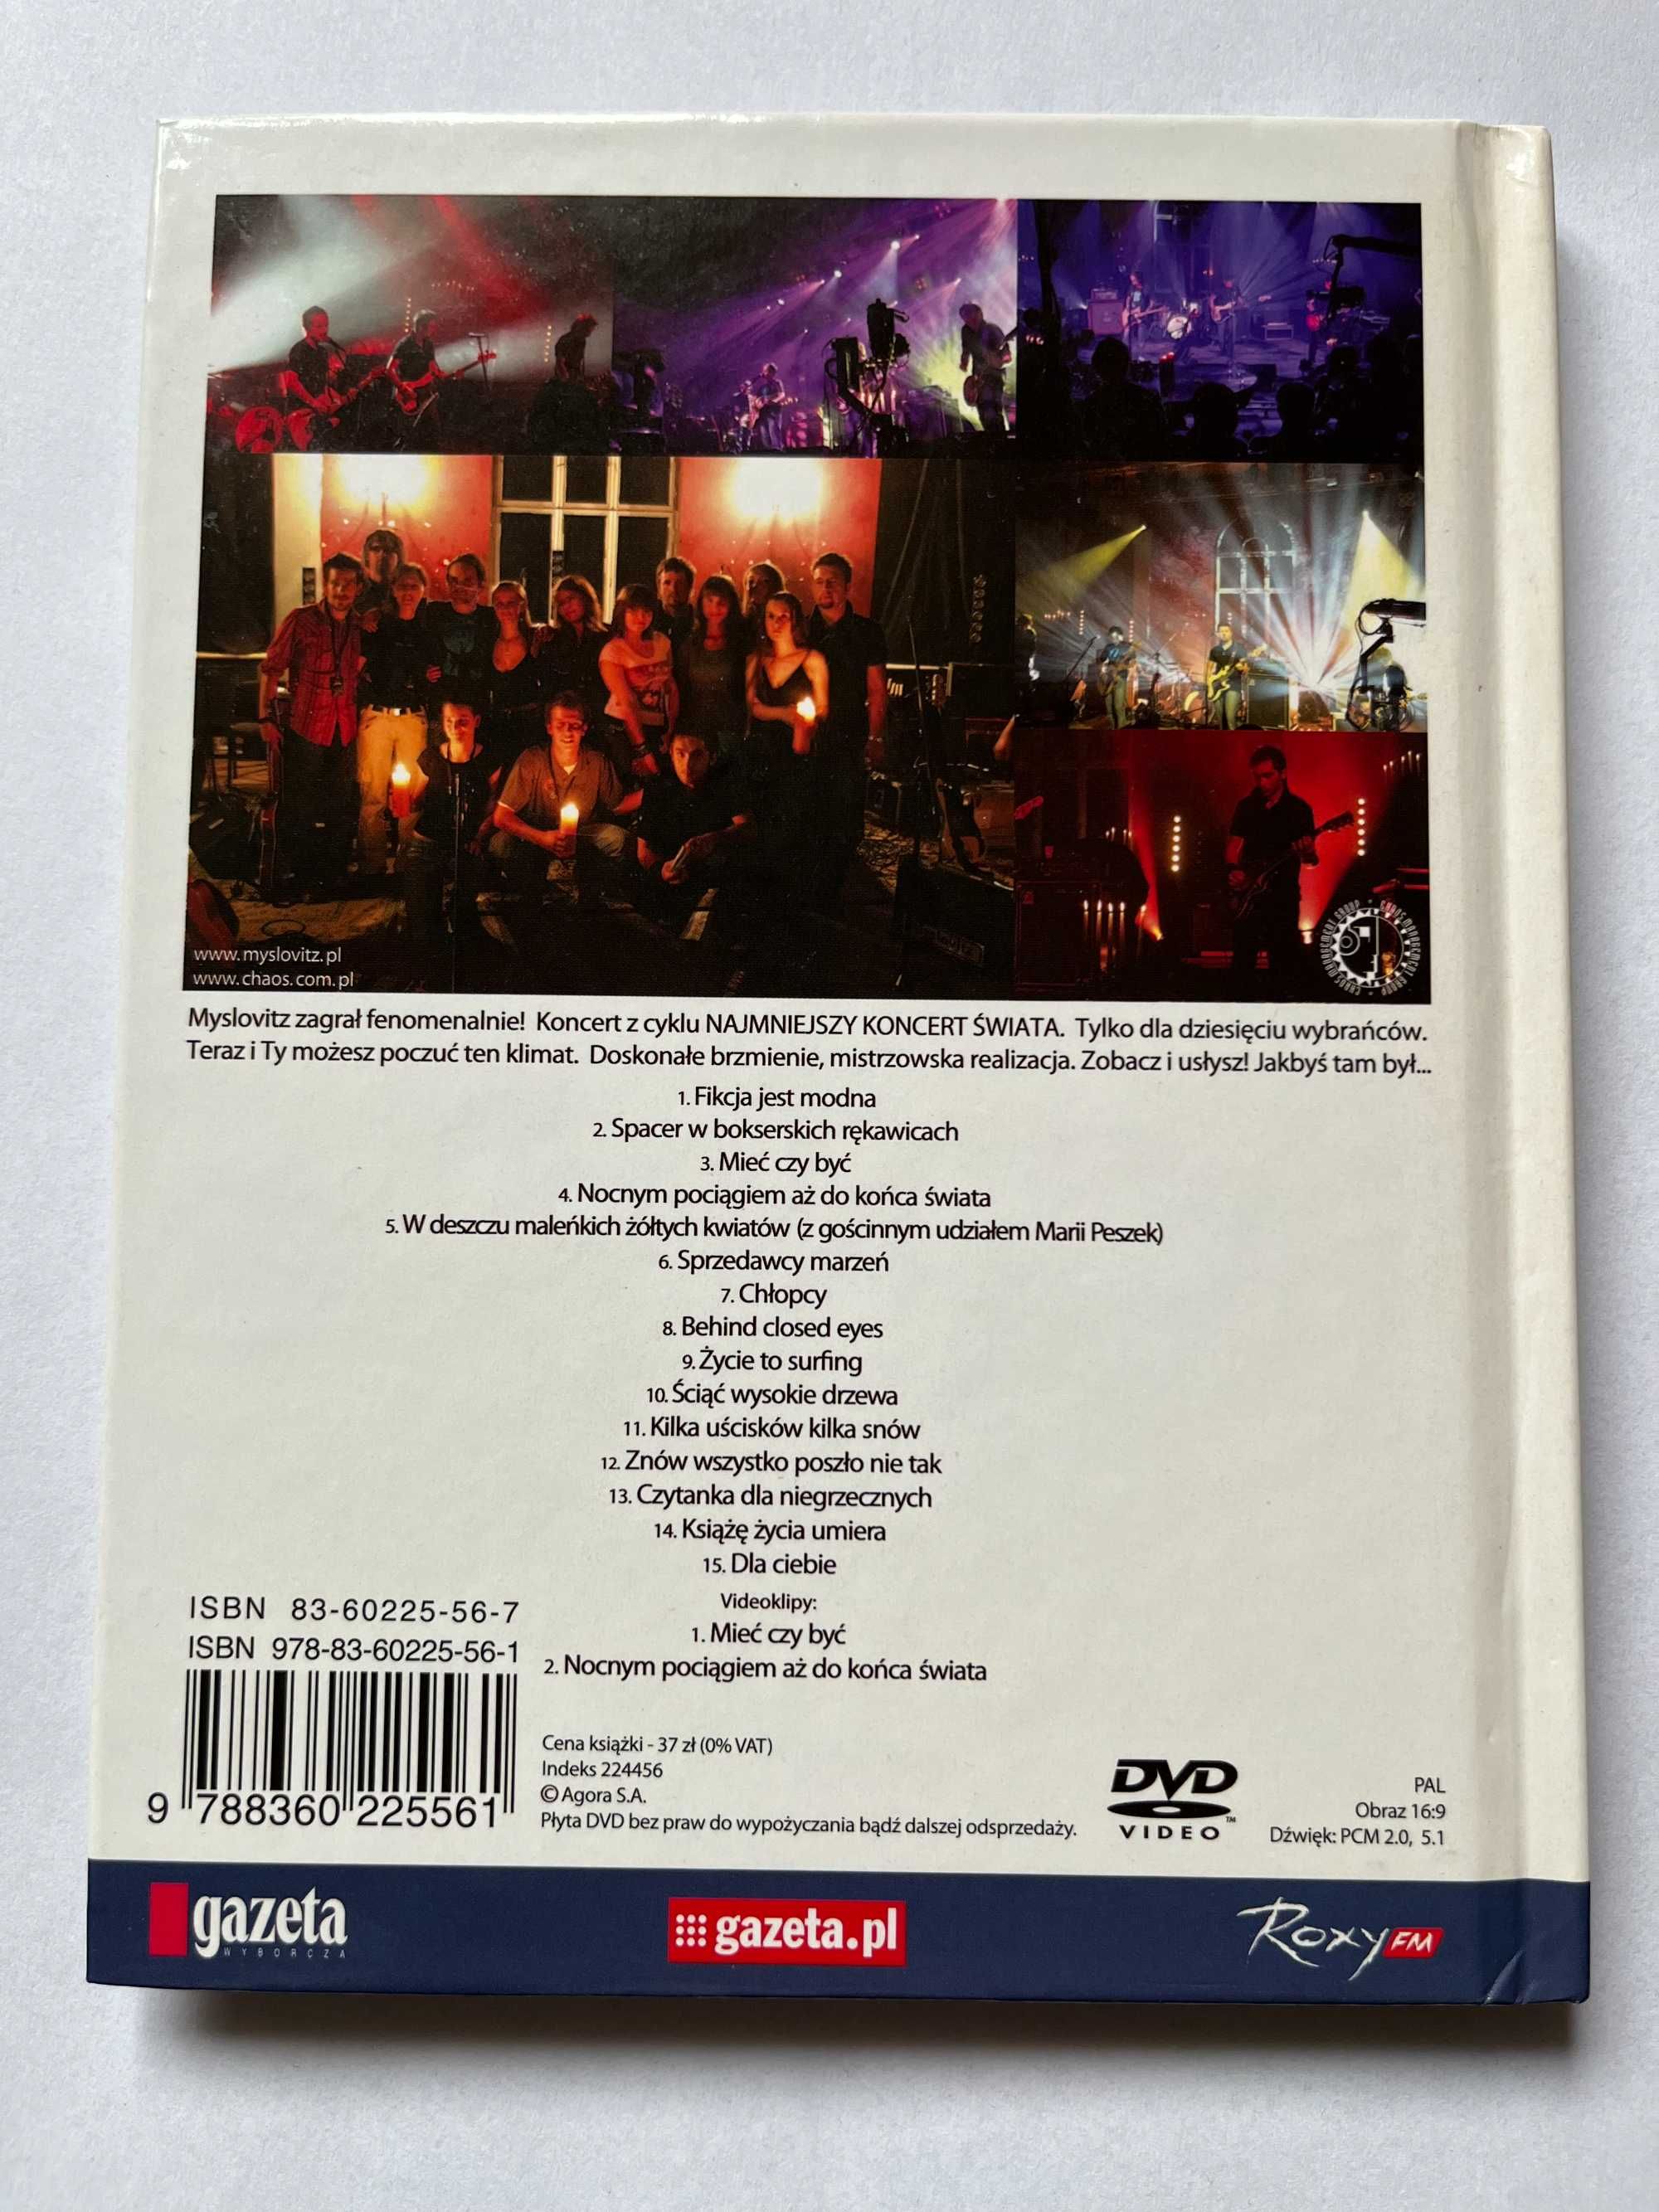 Myslovitz - Najmniejszy Koncert Świata (DVD)